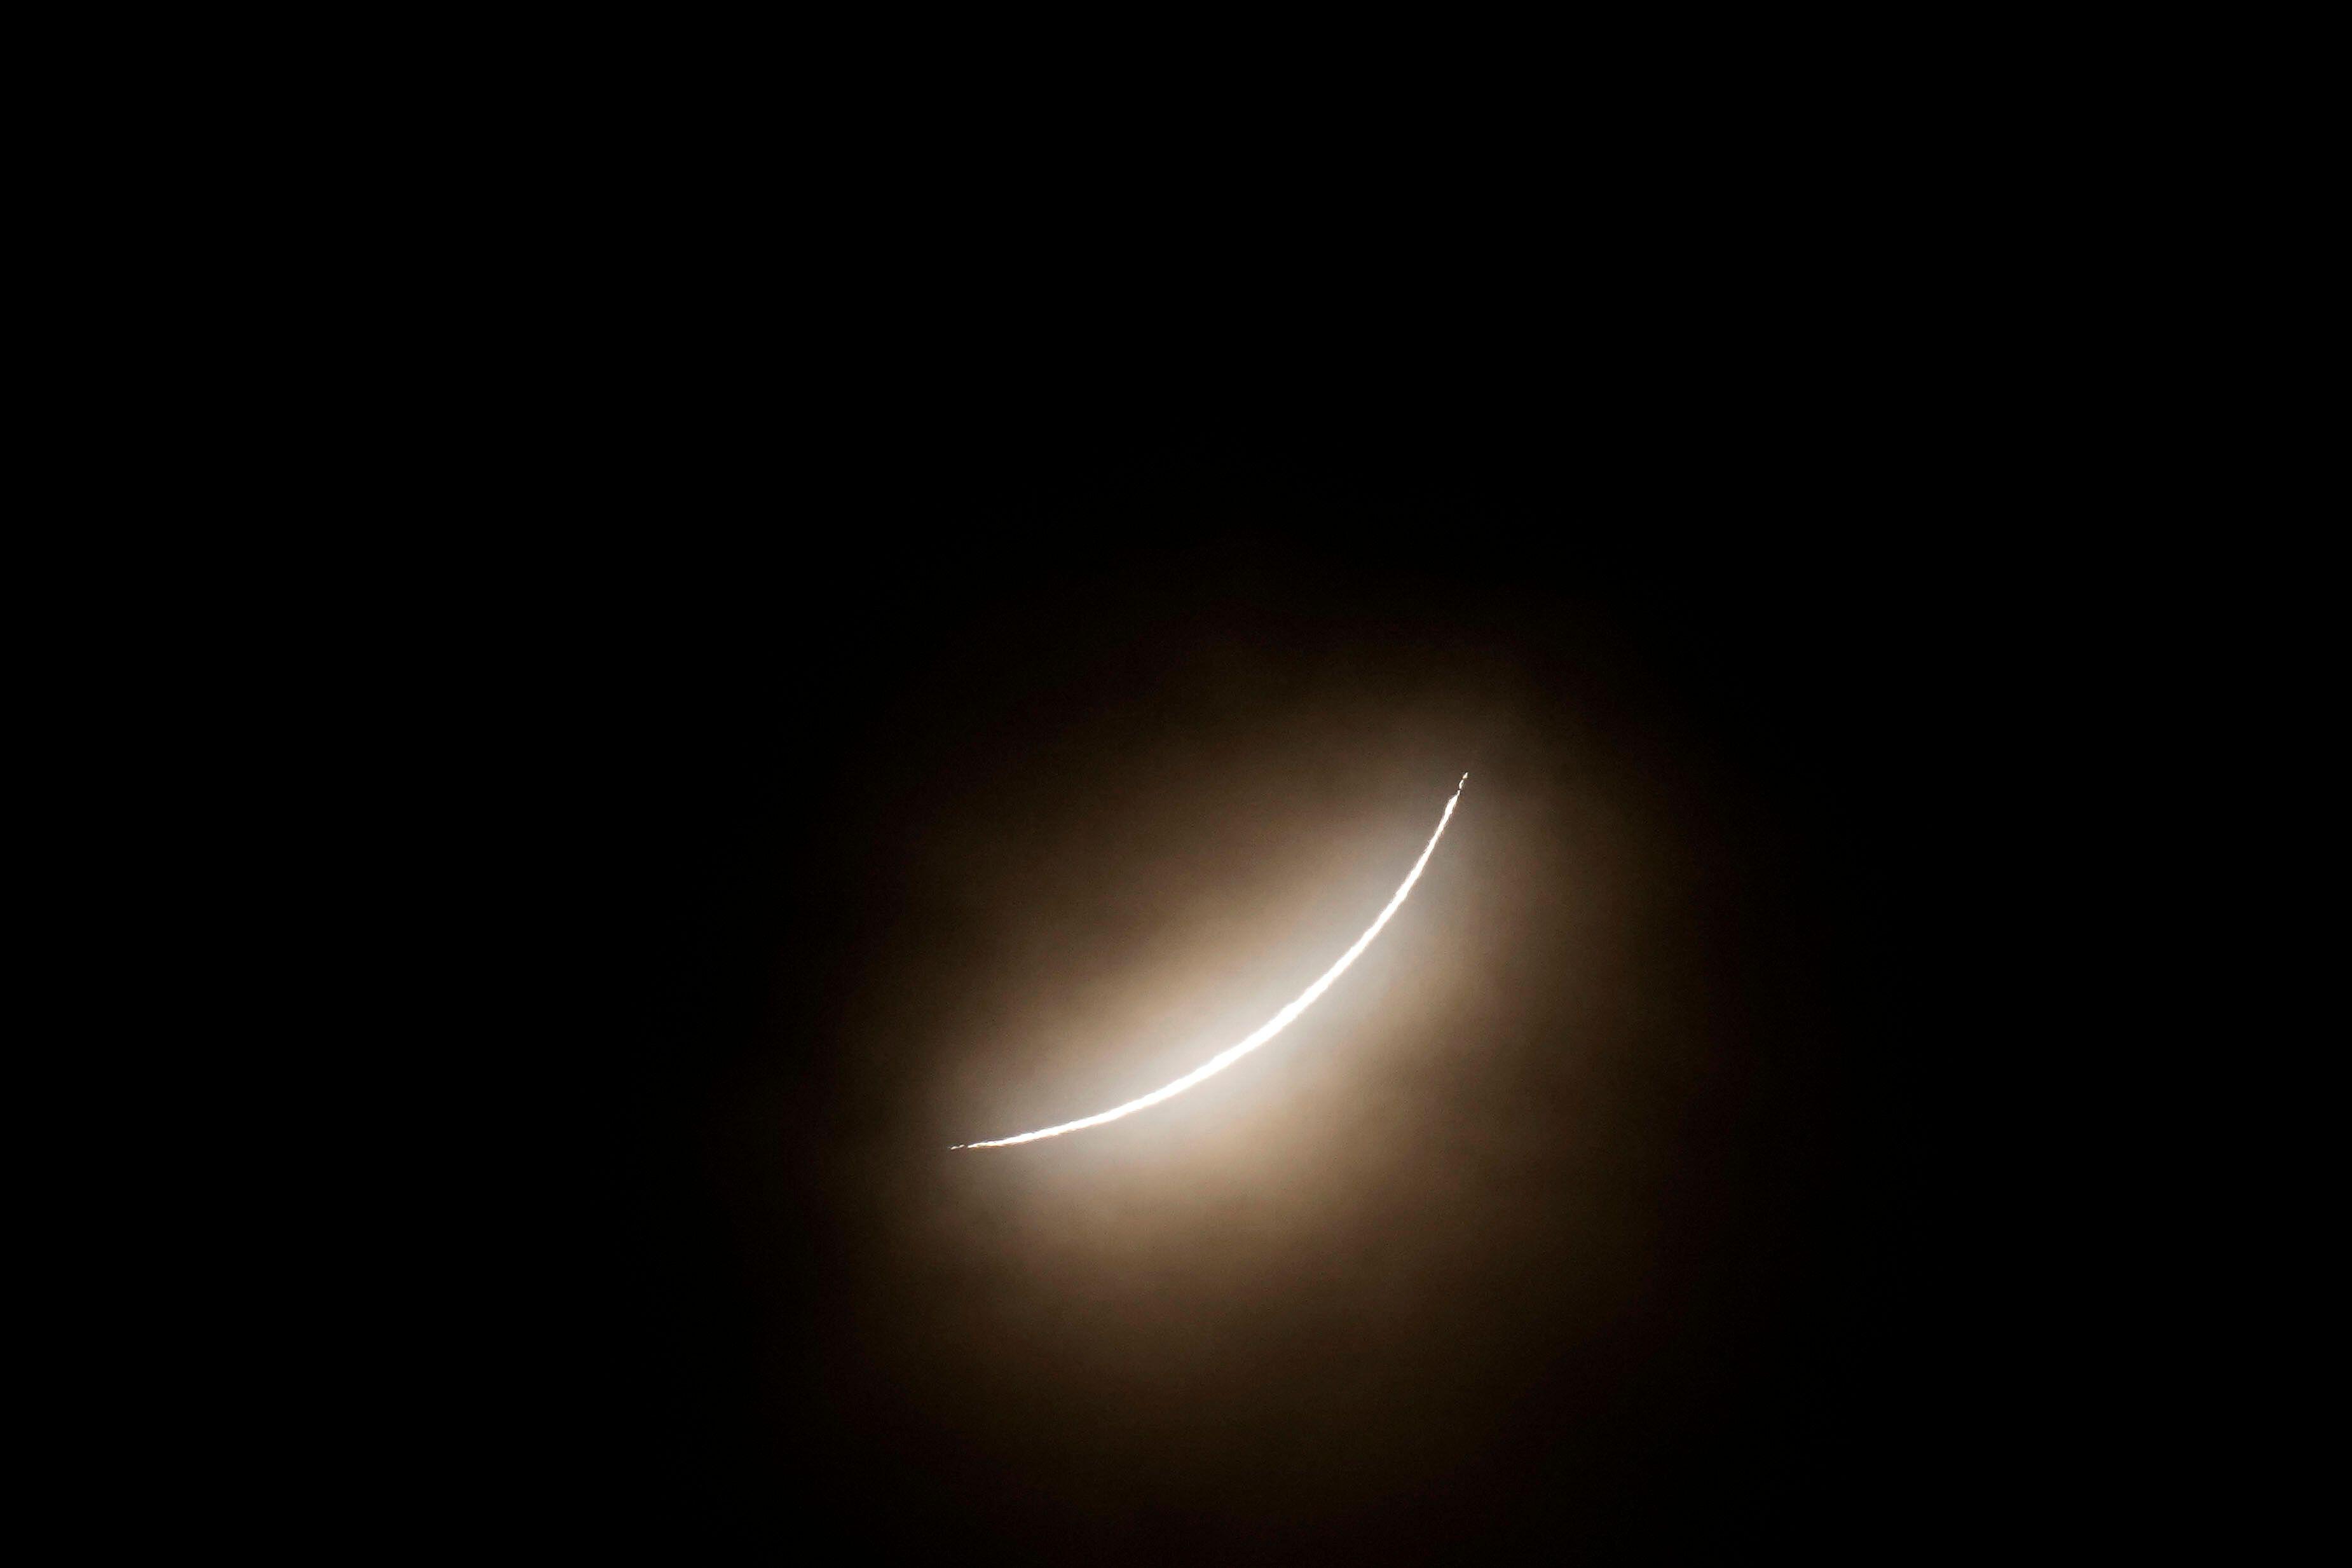 텍사스 주 이글 패스에서 본 개기 일식 동안 달이 태양을 부분적으로 가리고 있습니다.